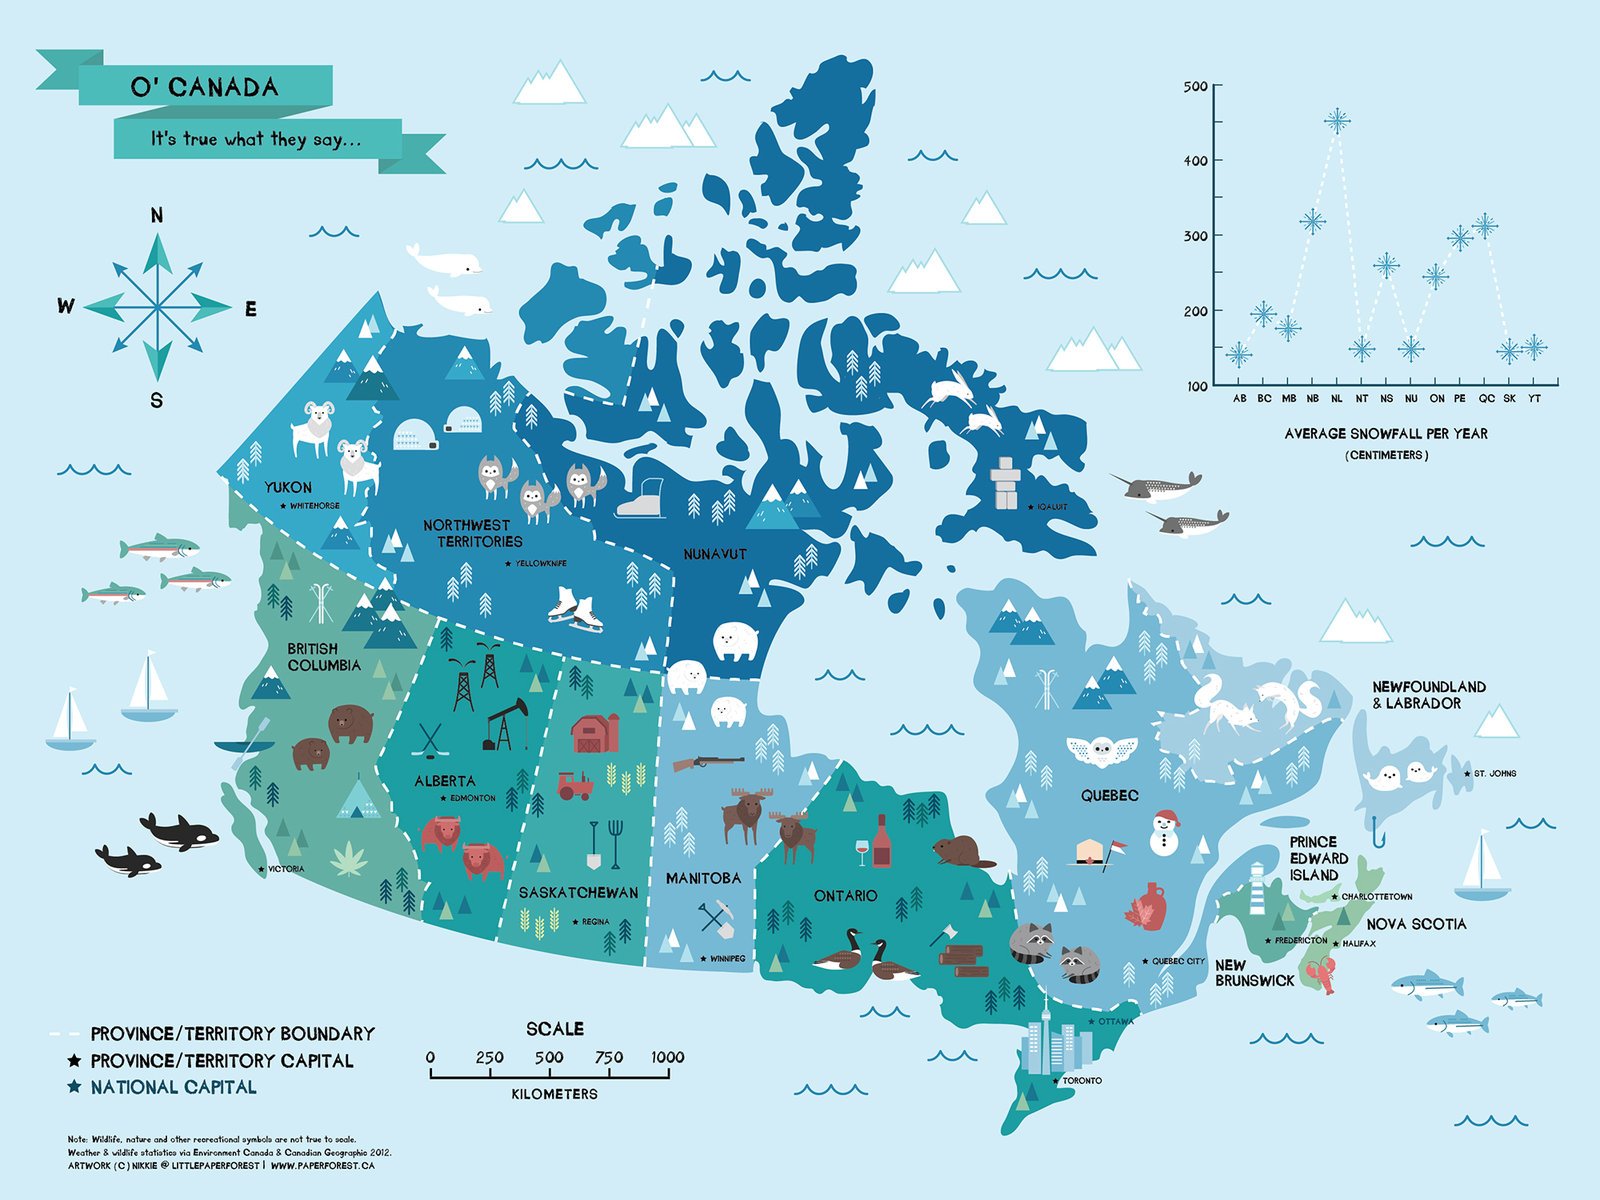 ナチュリブカナダ トロントのイラストレーター ニッキーさん Paperforest のカナダ地図がかわいい 各州の代表的な野生動物が描かれています バンクーバーのあるブリティッシュコロンビア州は グリズリーベアとキラーホエール シャチ ですね